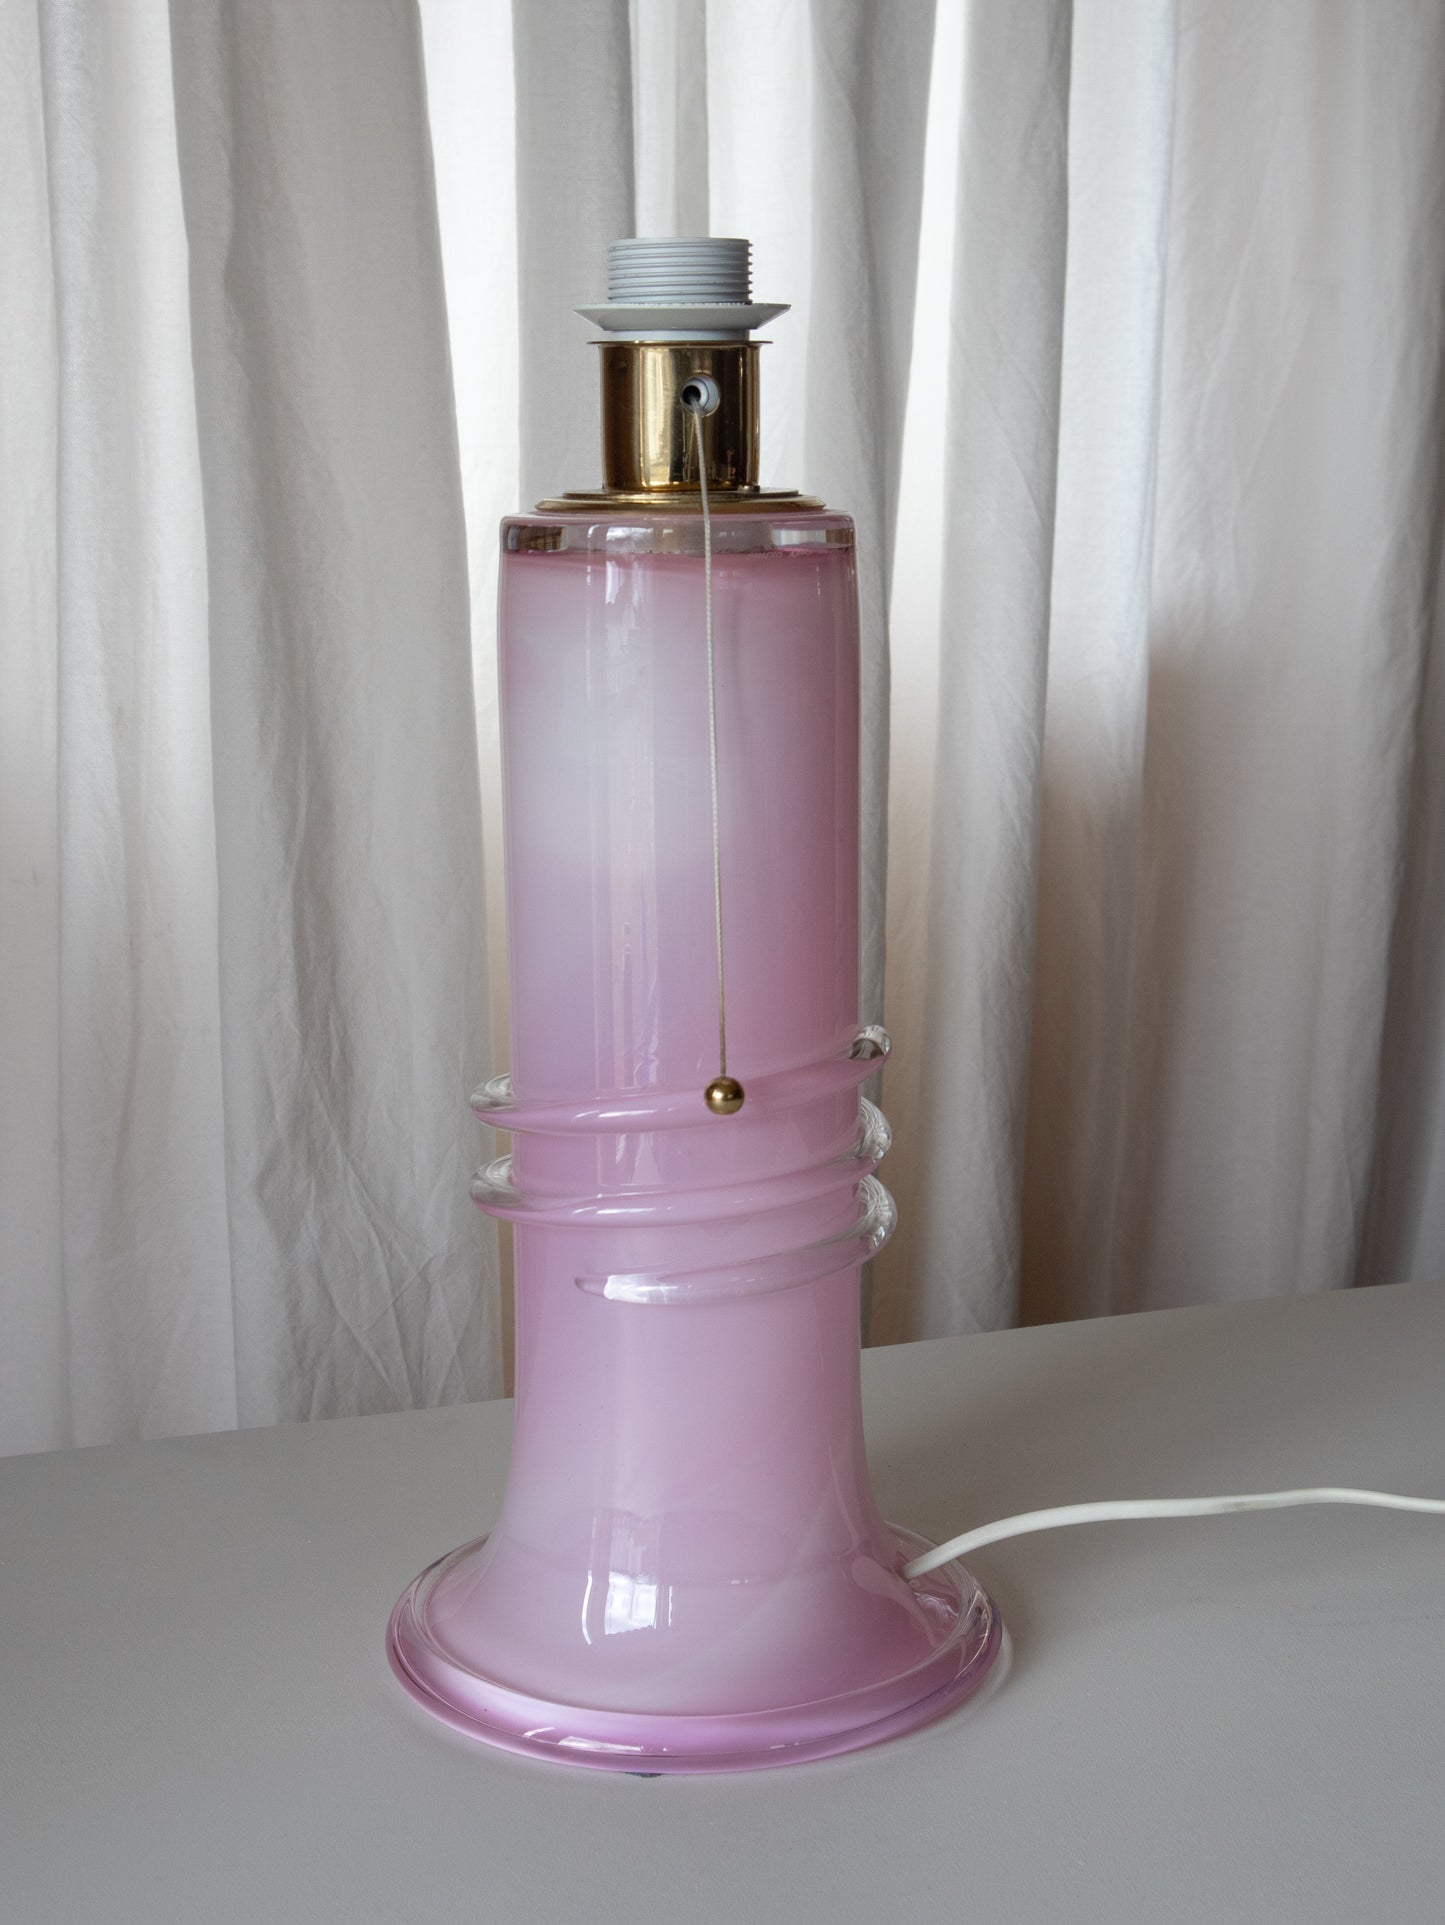 Vintage Ateljé Lyktan lampe